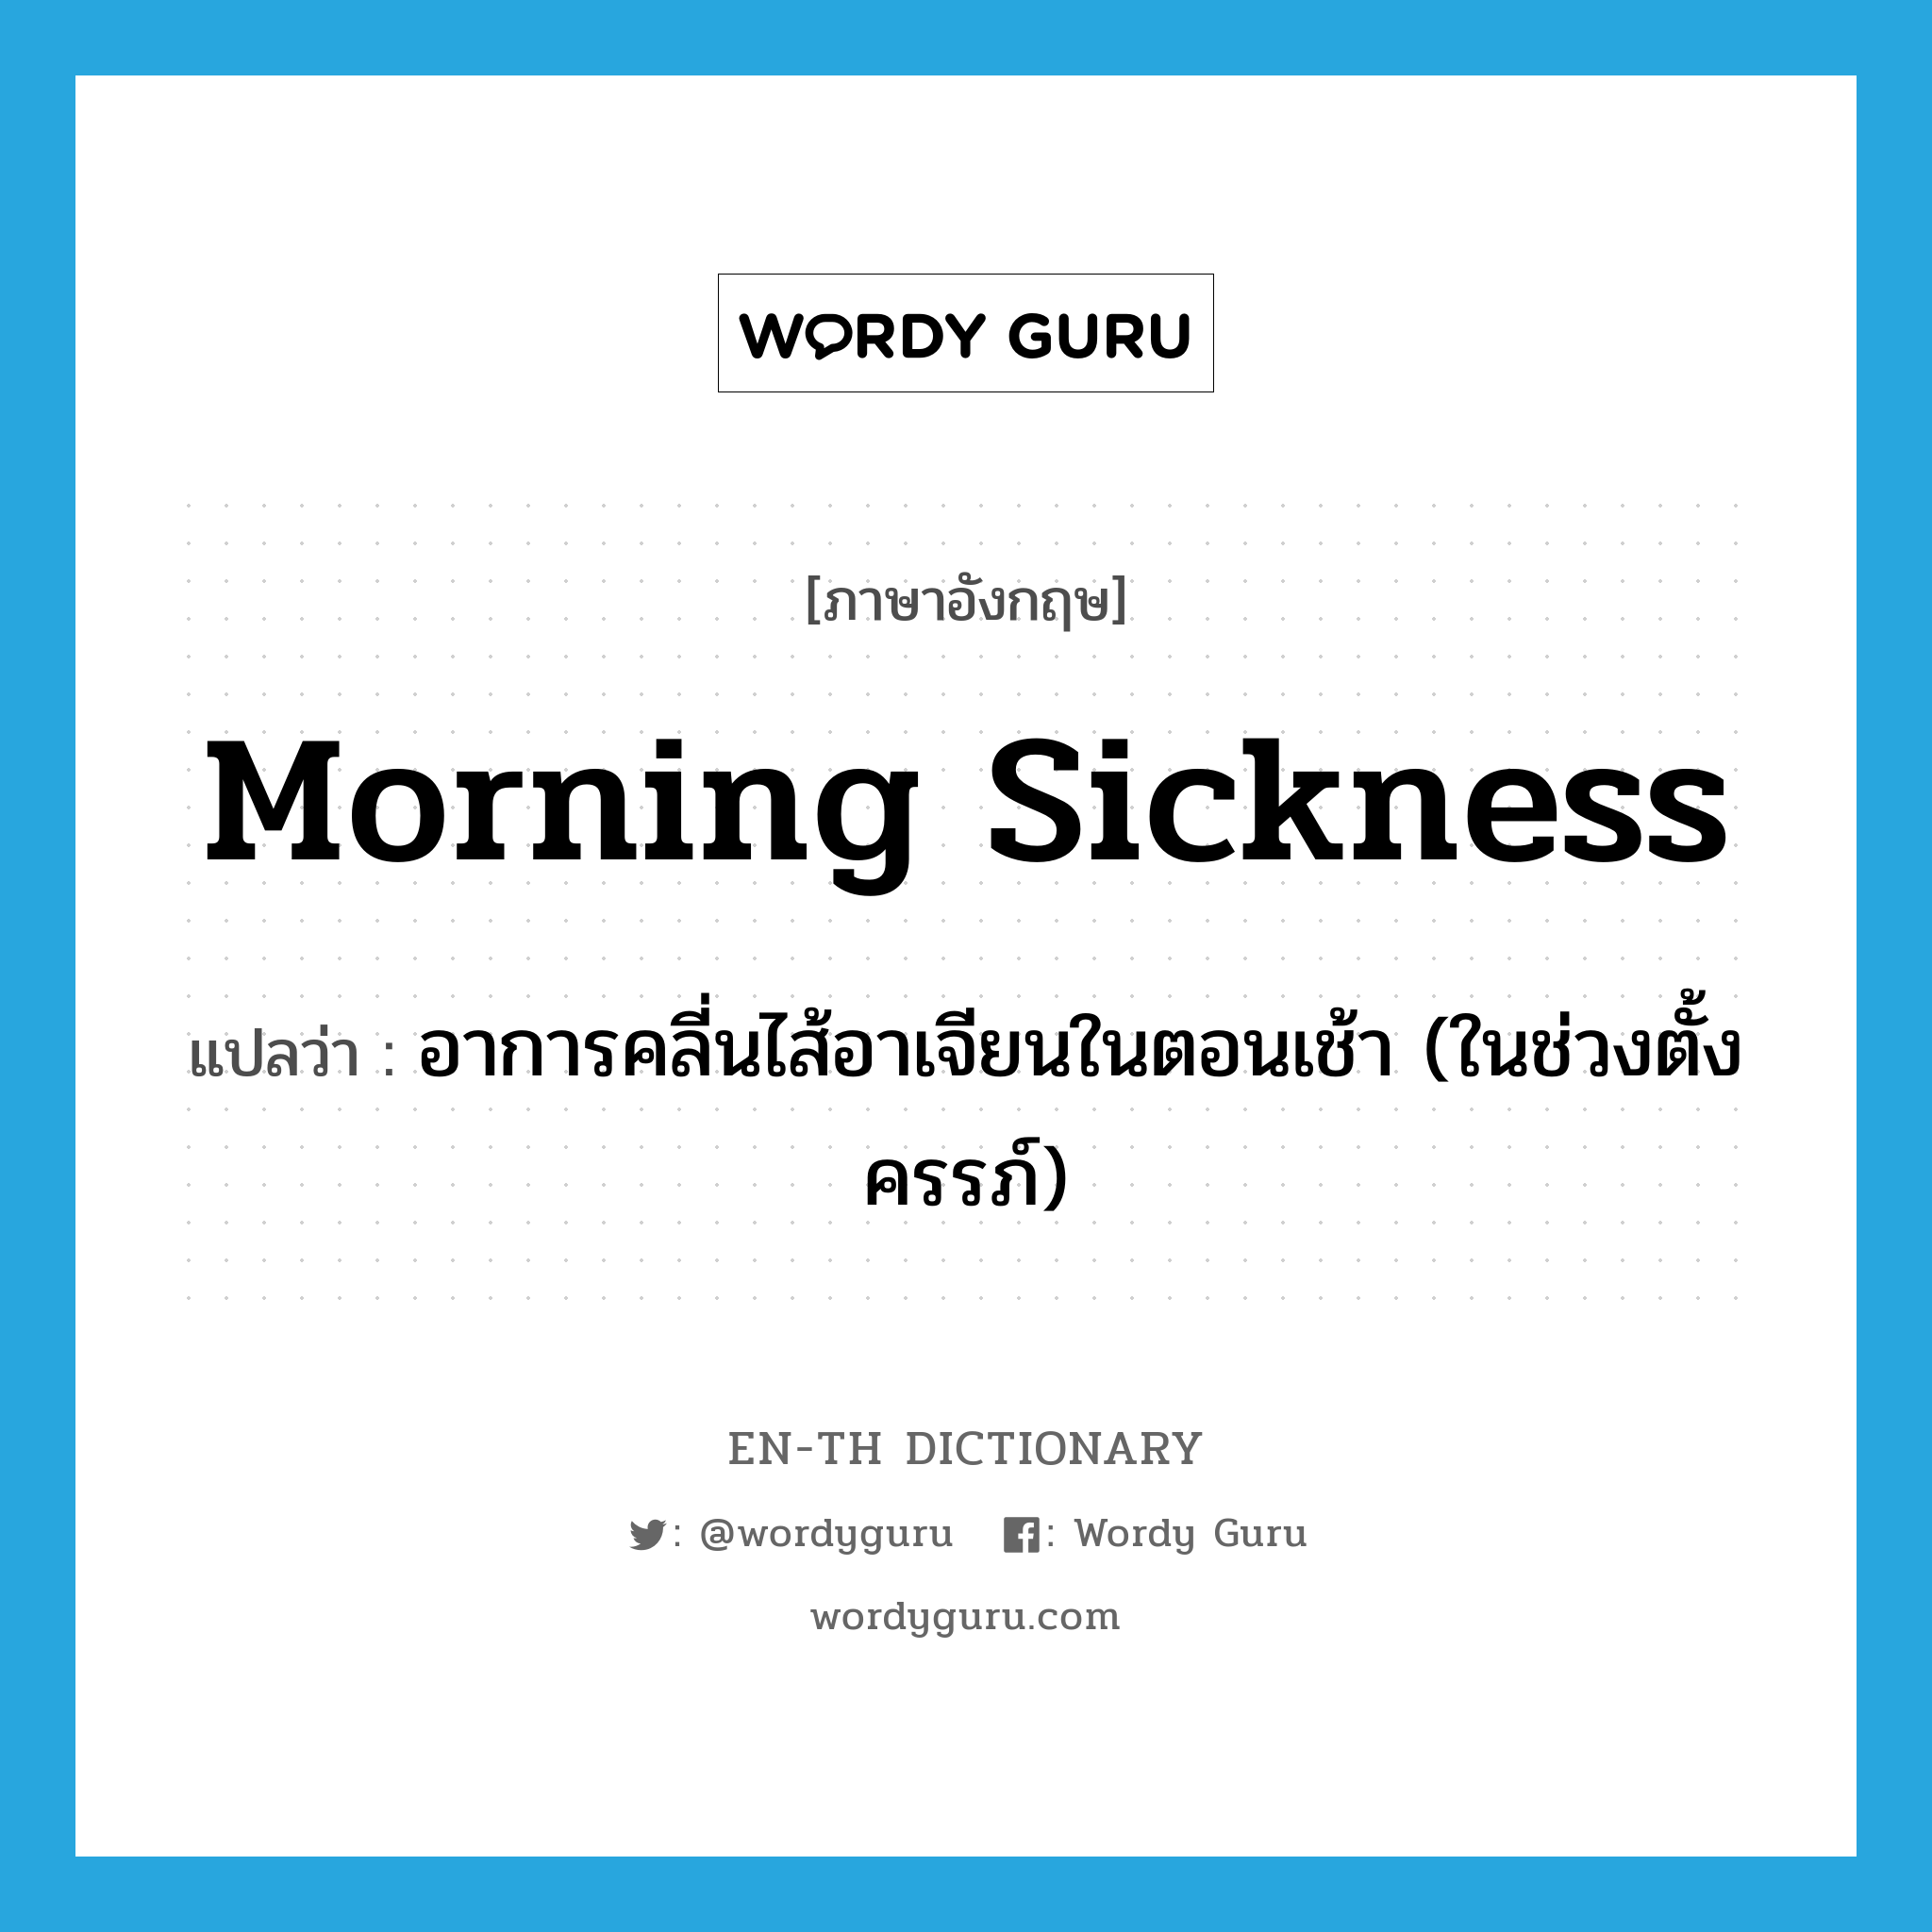 morning sickness แปลว่า?, คำศัพท์ภาษาอังกฤษ morning sickness แปลว่า อาการคลี่นไส้อาเจียนในตอนเช้า (ในช่วงตั้งครรภ์) ประเภท N หมวด N